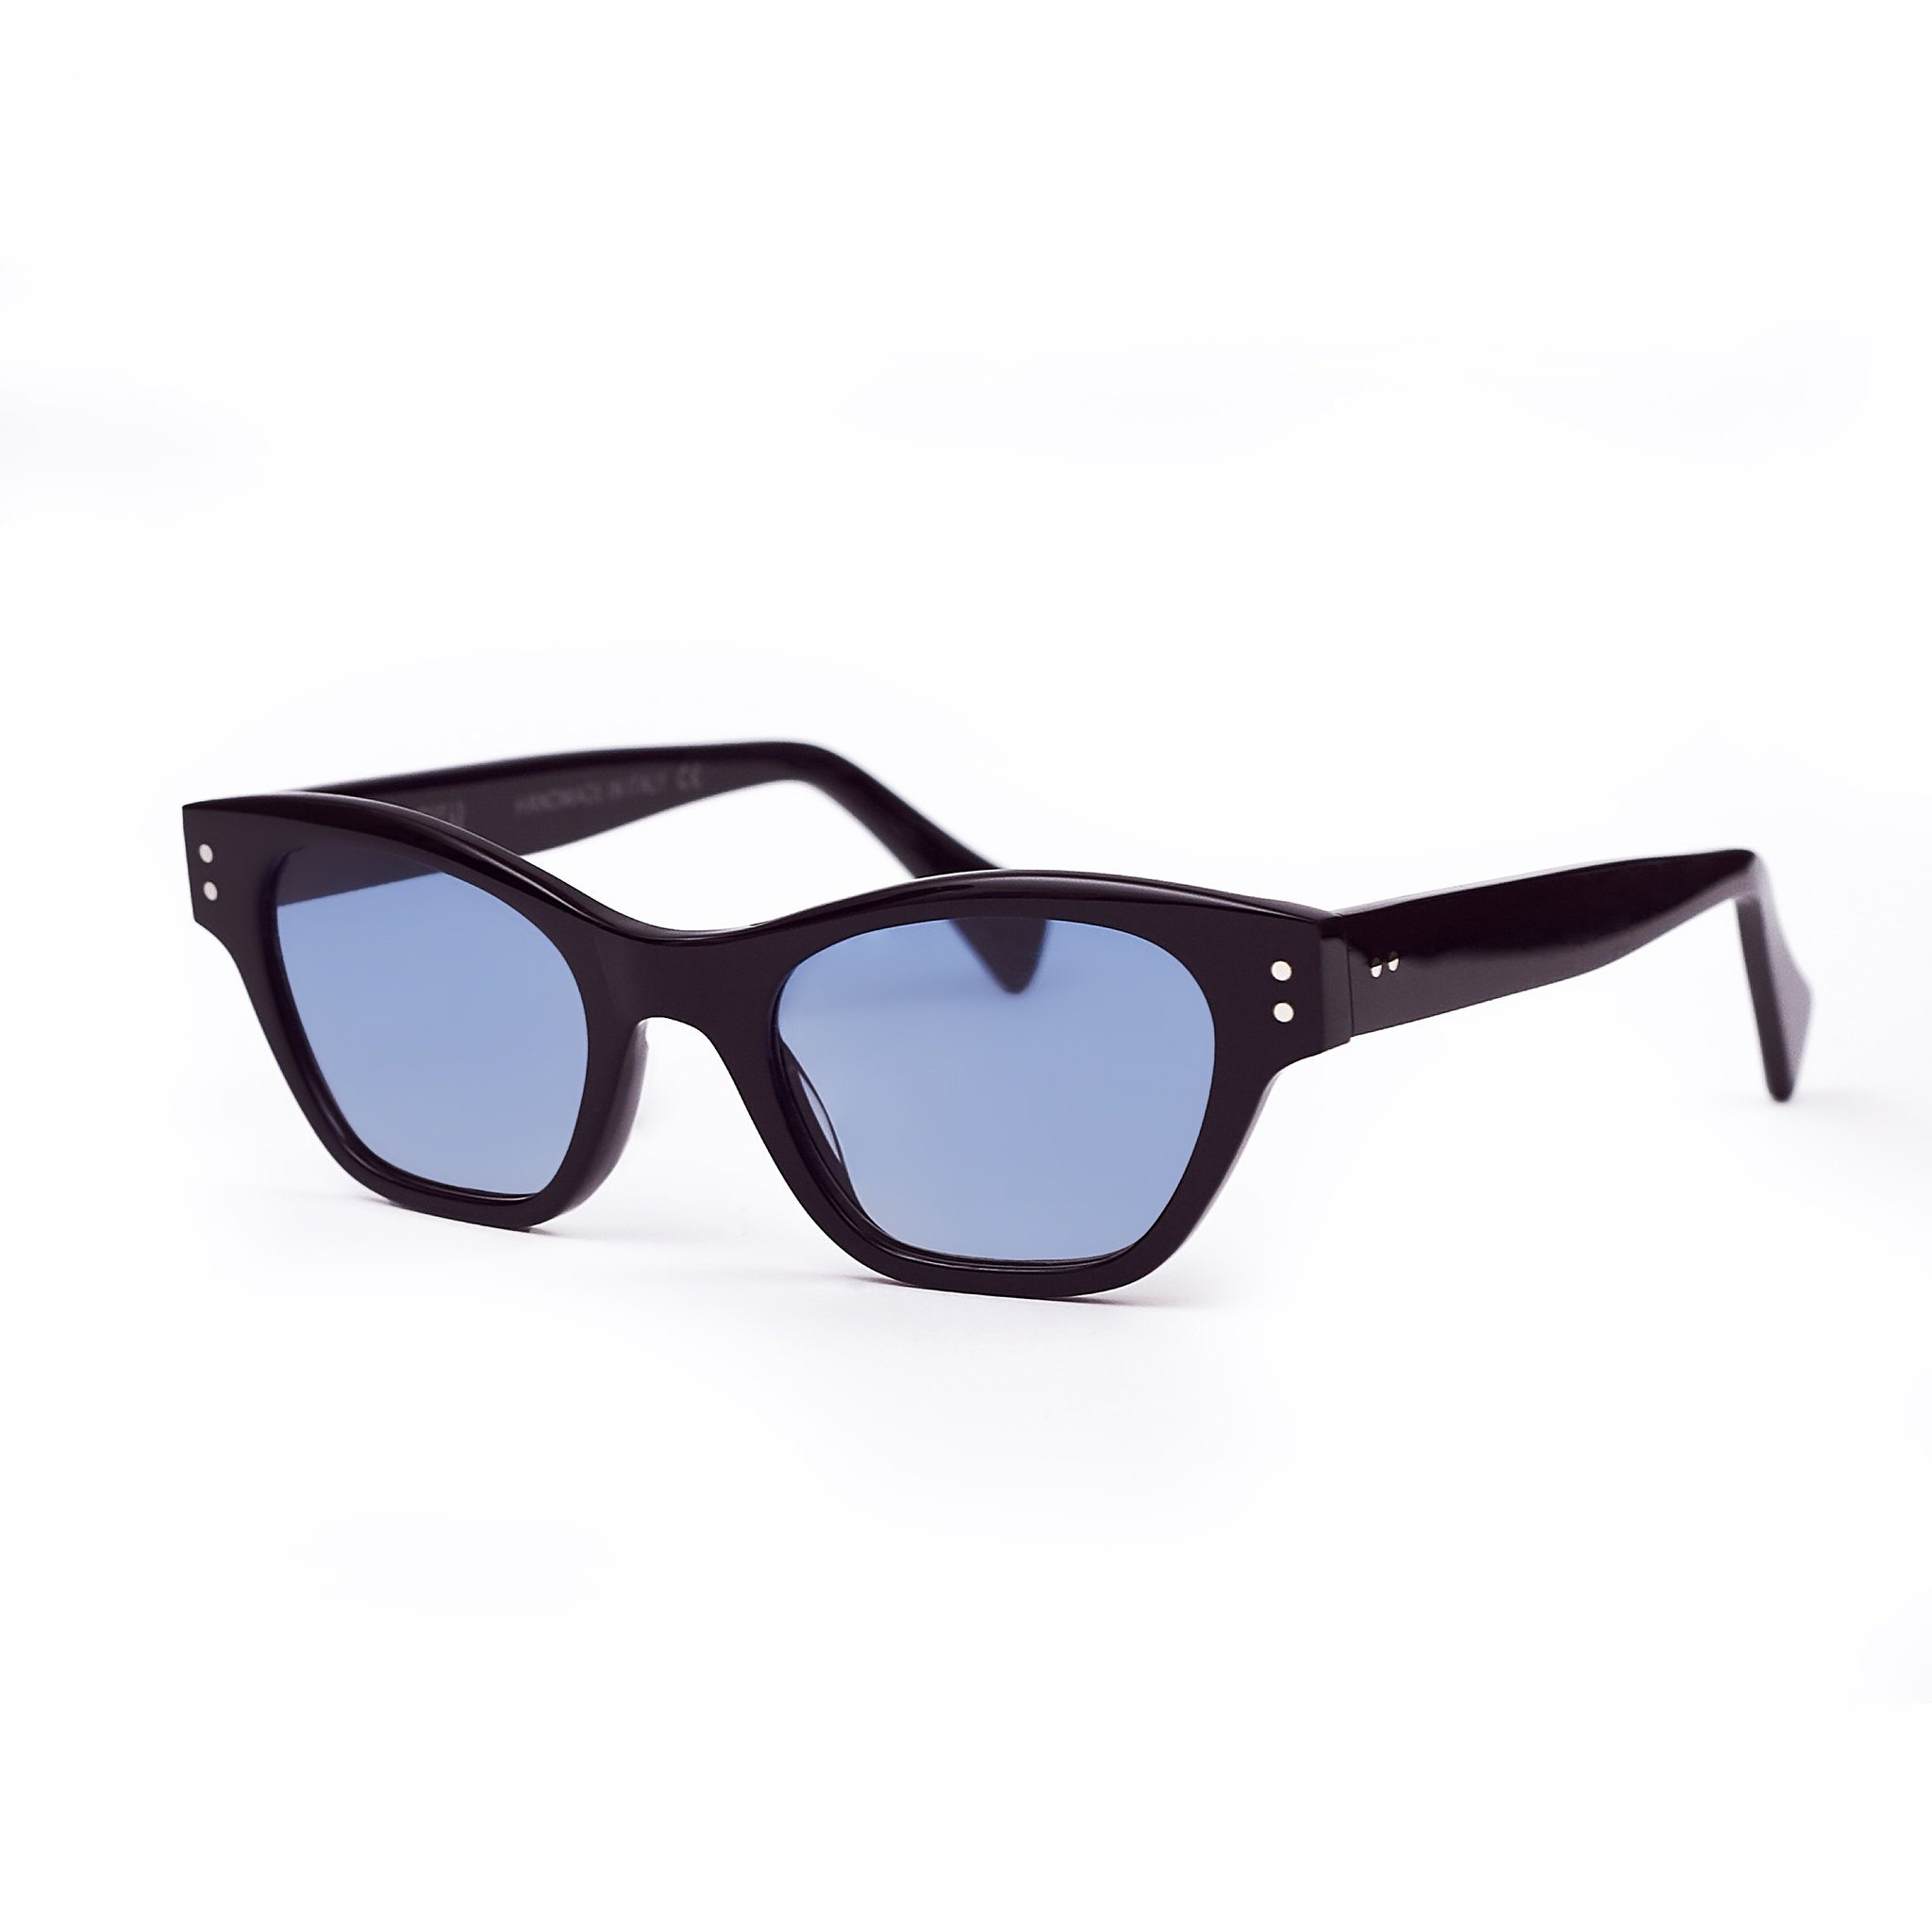 Black cat-eye sunglasses with light blue lenses handmade in italy